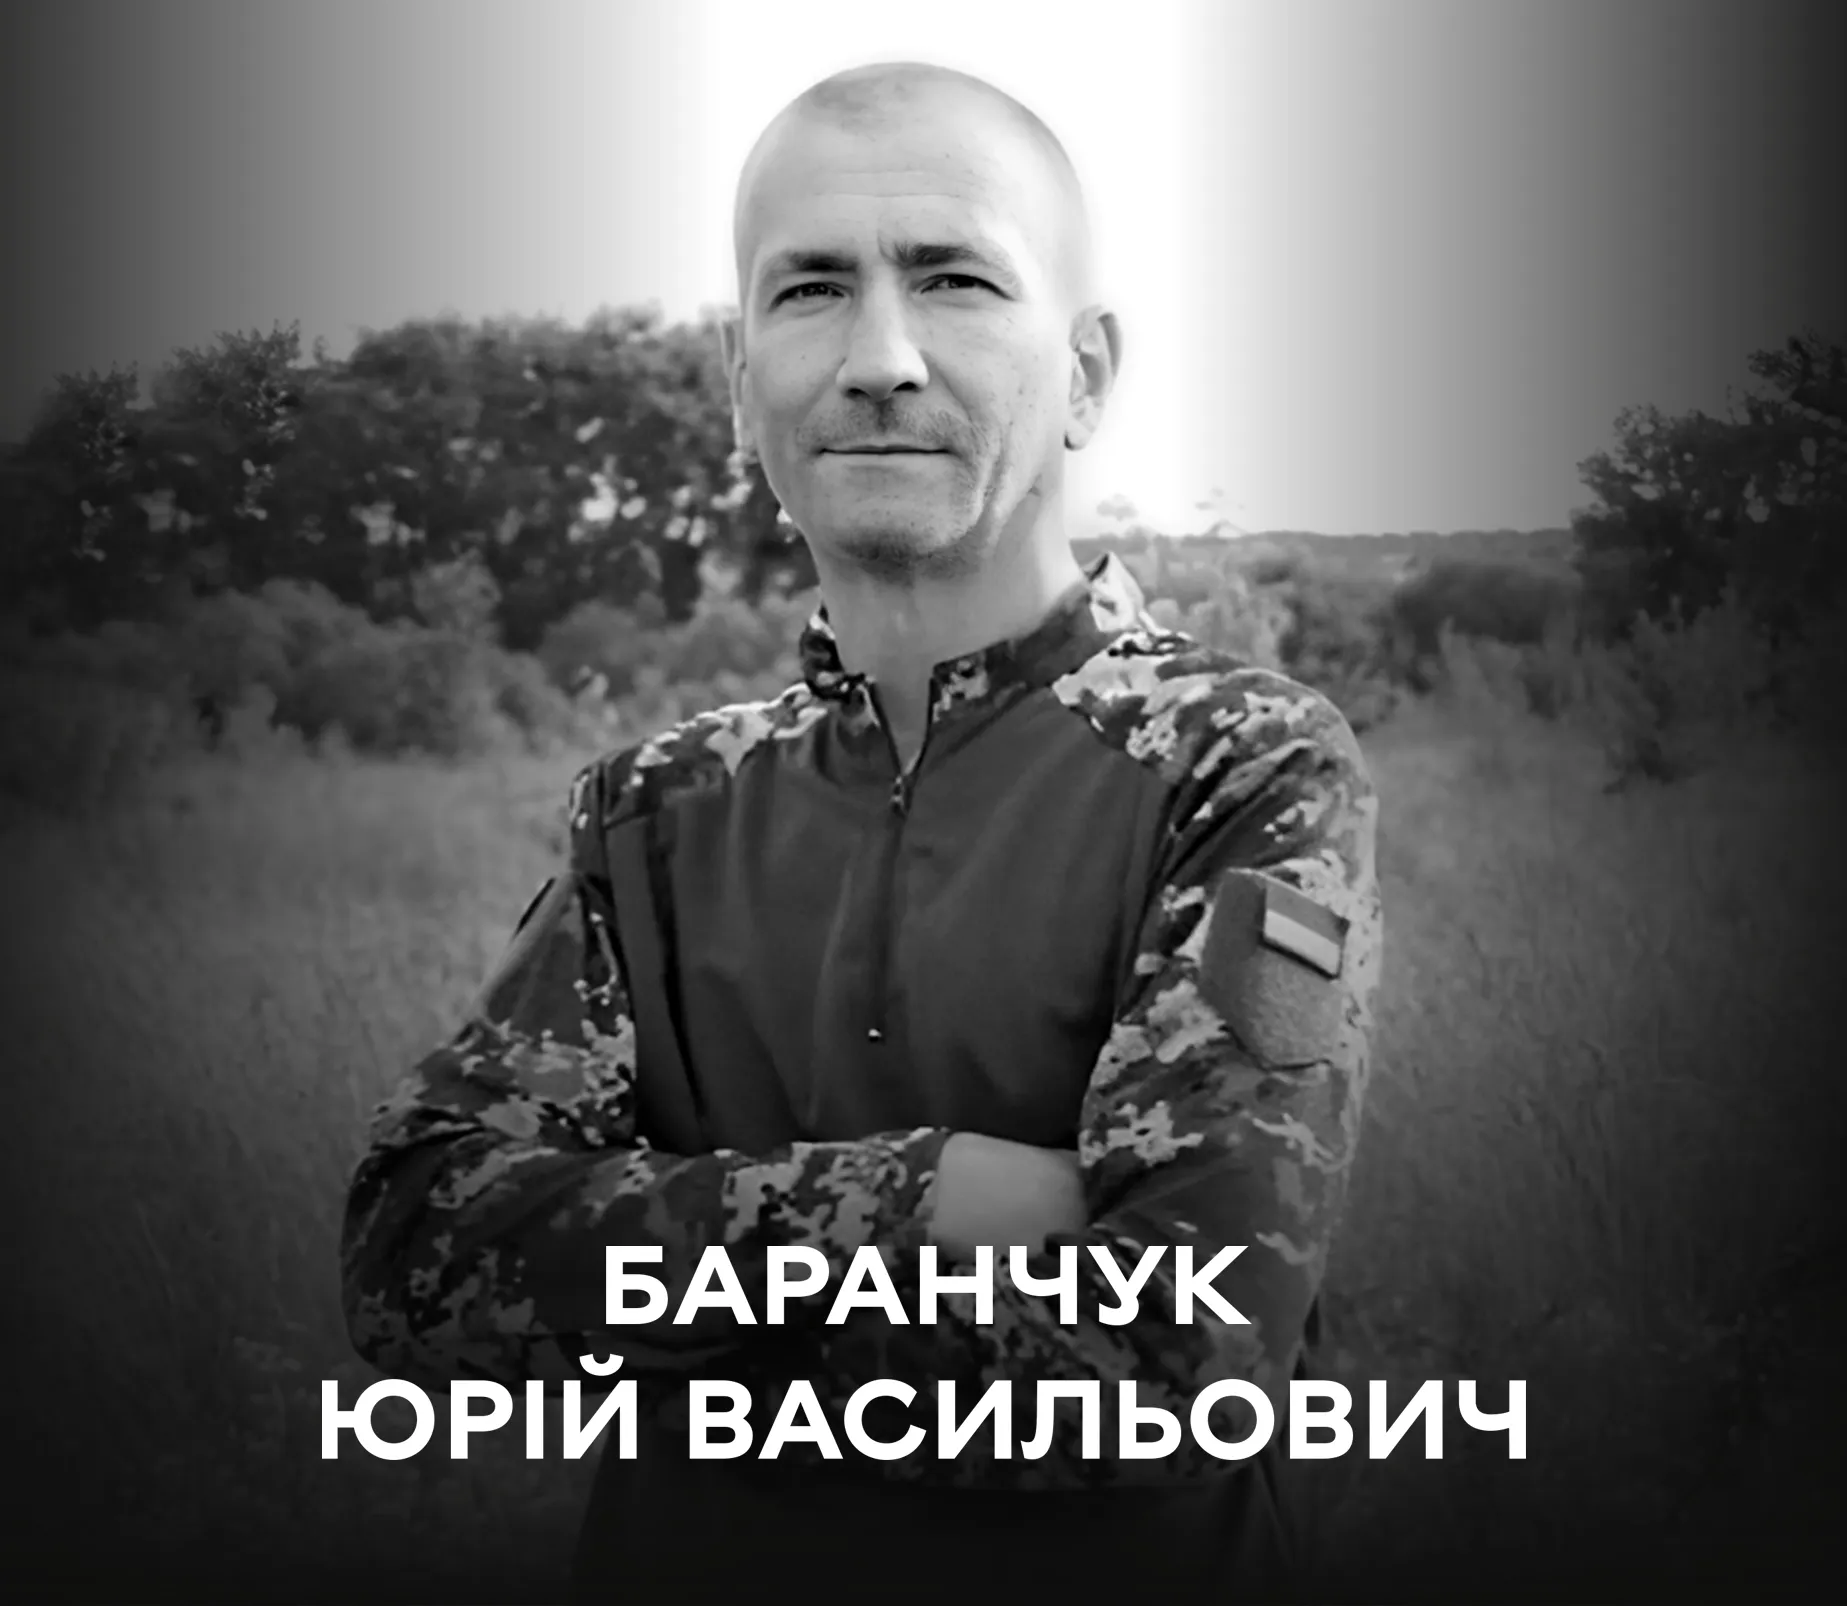 Сьогодні Вінниця проводжає на вічний спочинок Захисника України Юрія Баранчука